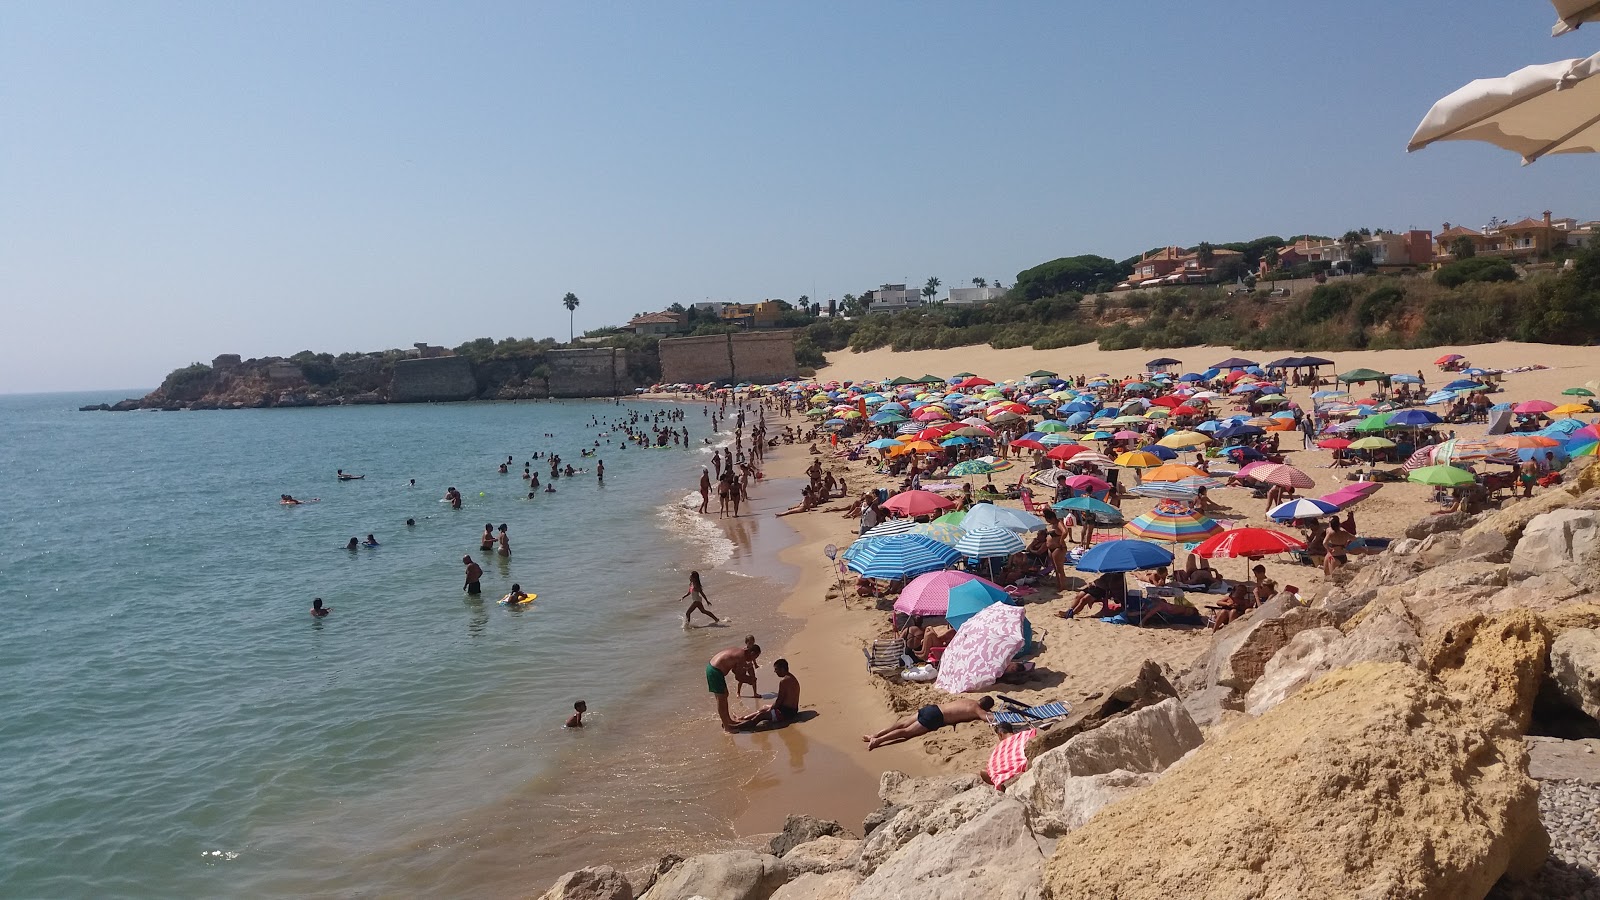 Playa de la Muralla'in fotoğrafı imkanlar alanı